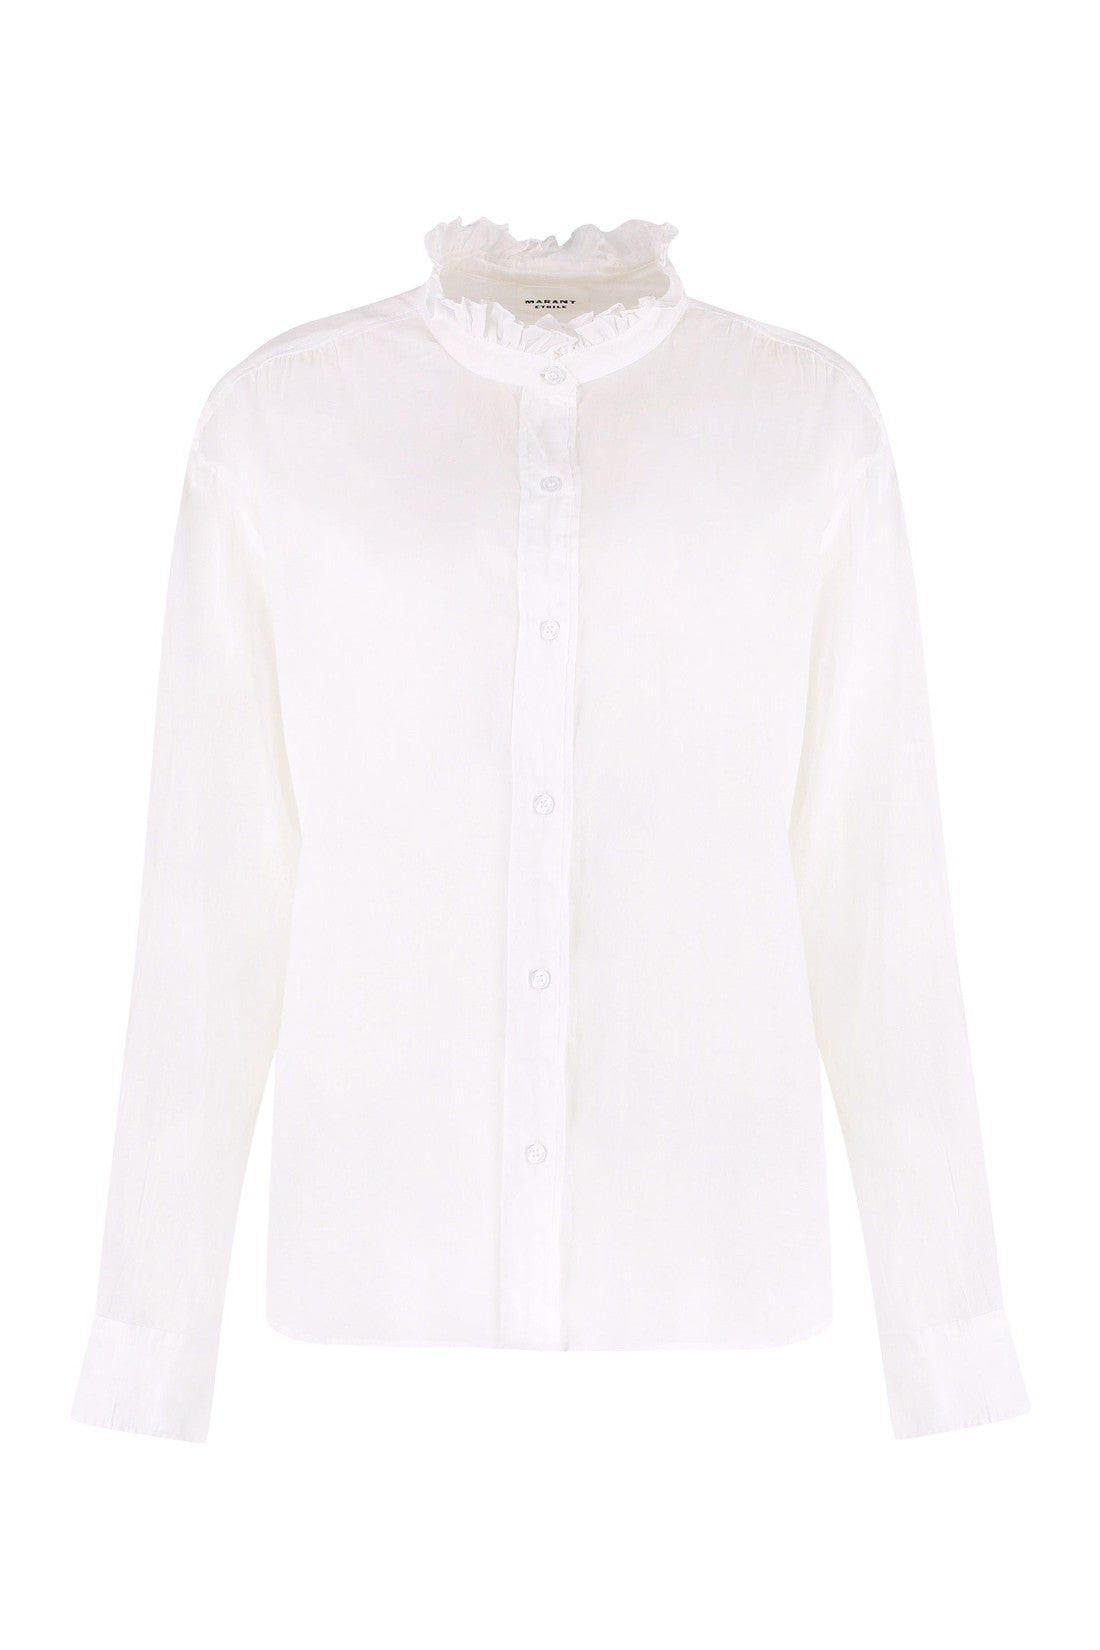 Isabel Marant Étoile-OUTLET-SALE-Gamble cotton shirt-ARCHIVIST